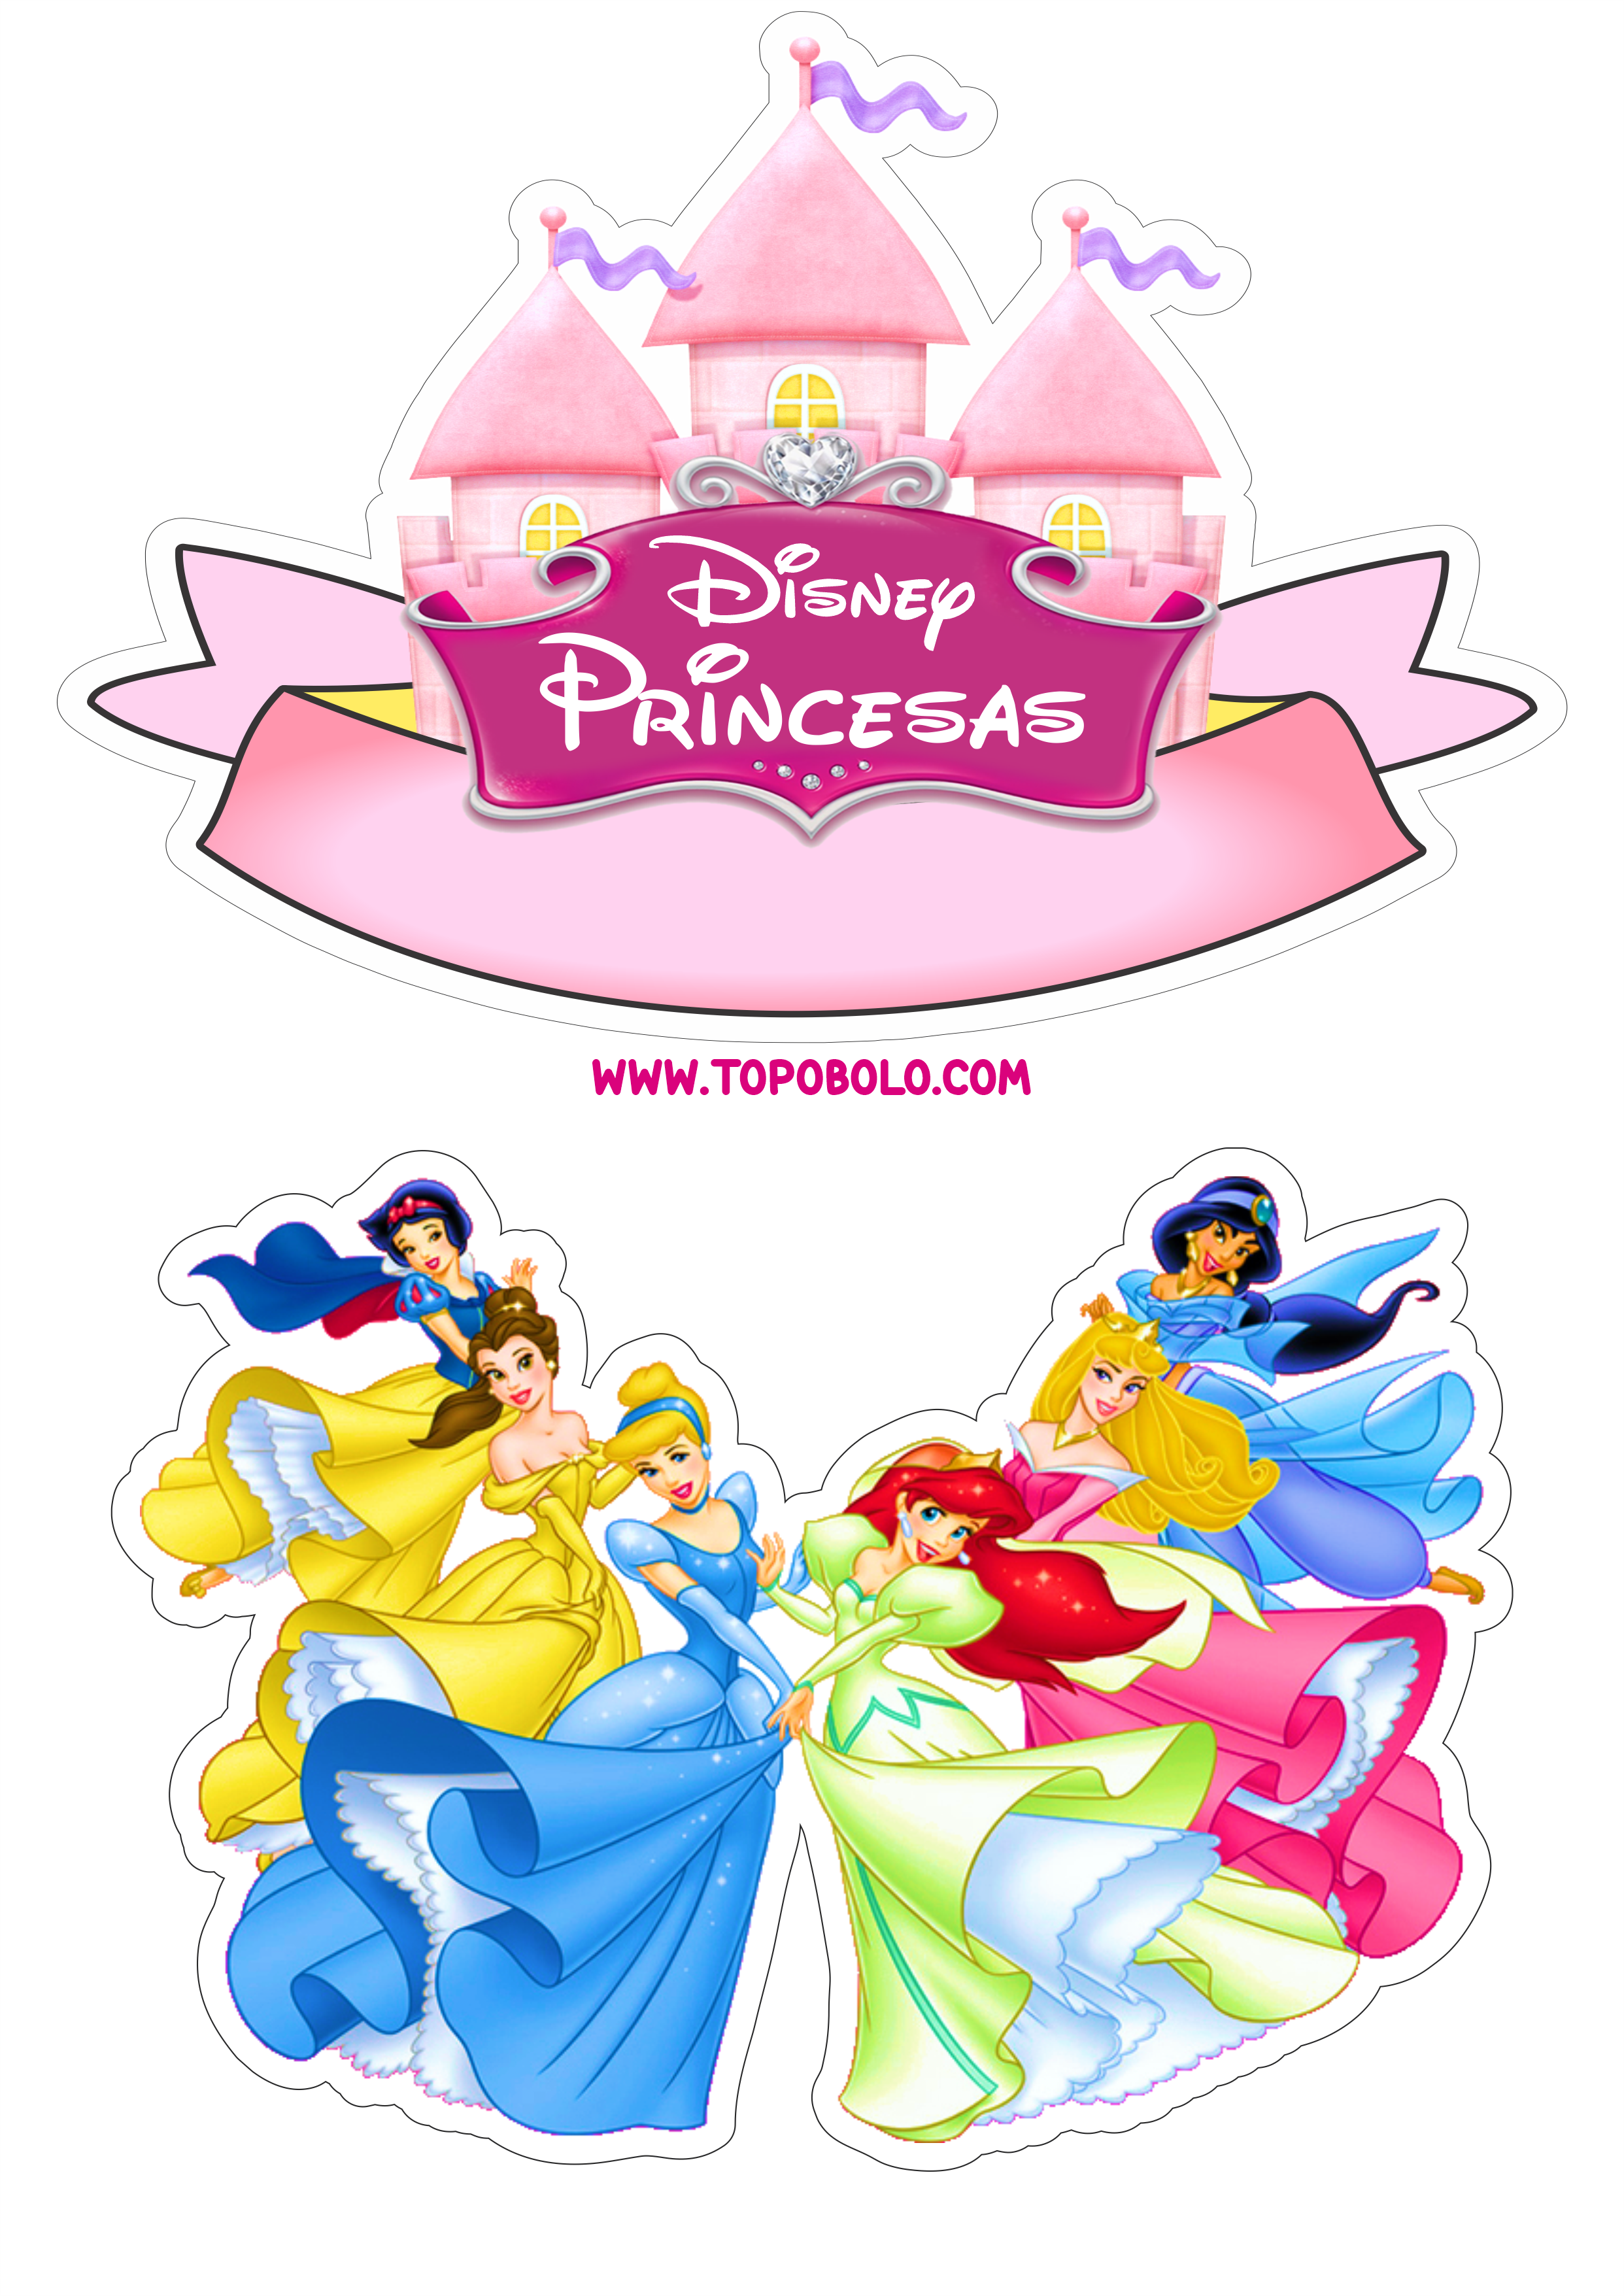 Princesas Disney topo de bolo pronto para imprimir aniversário infantil png